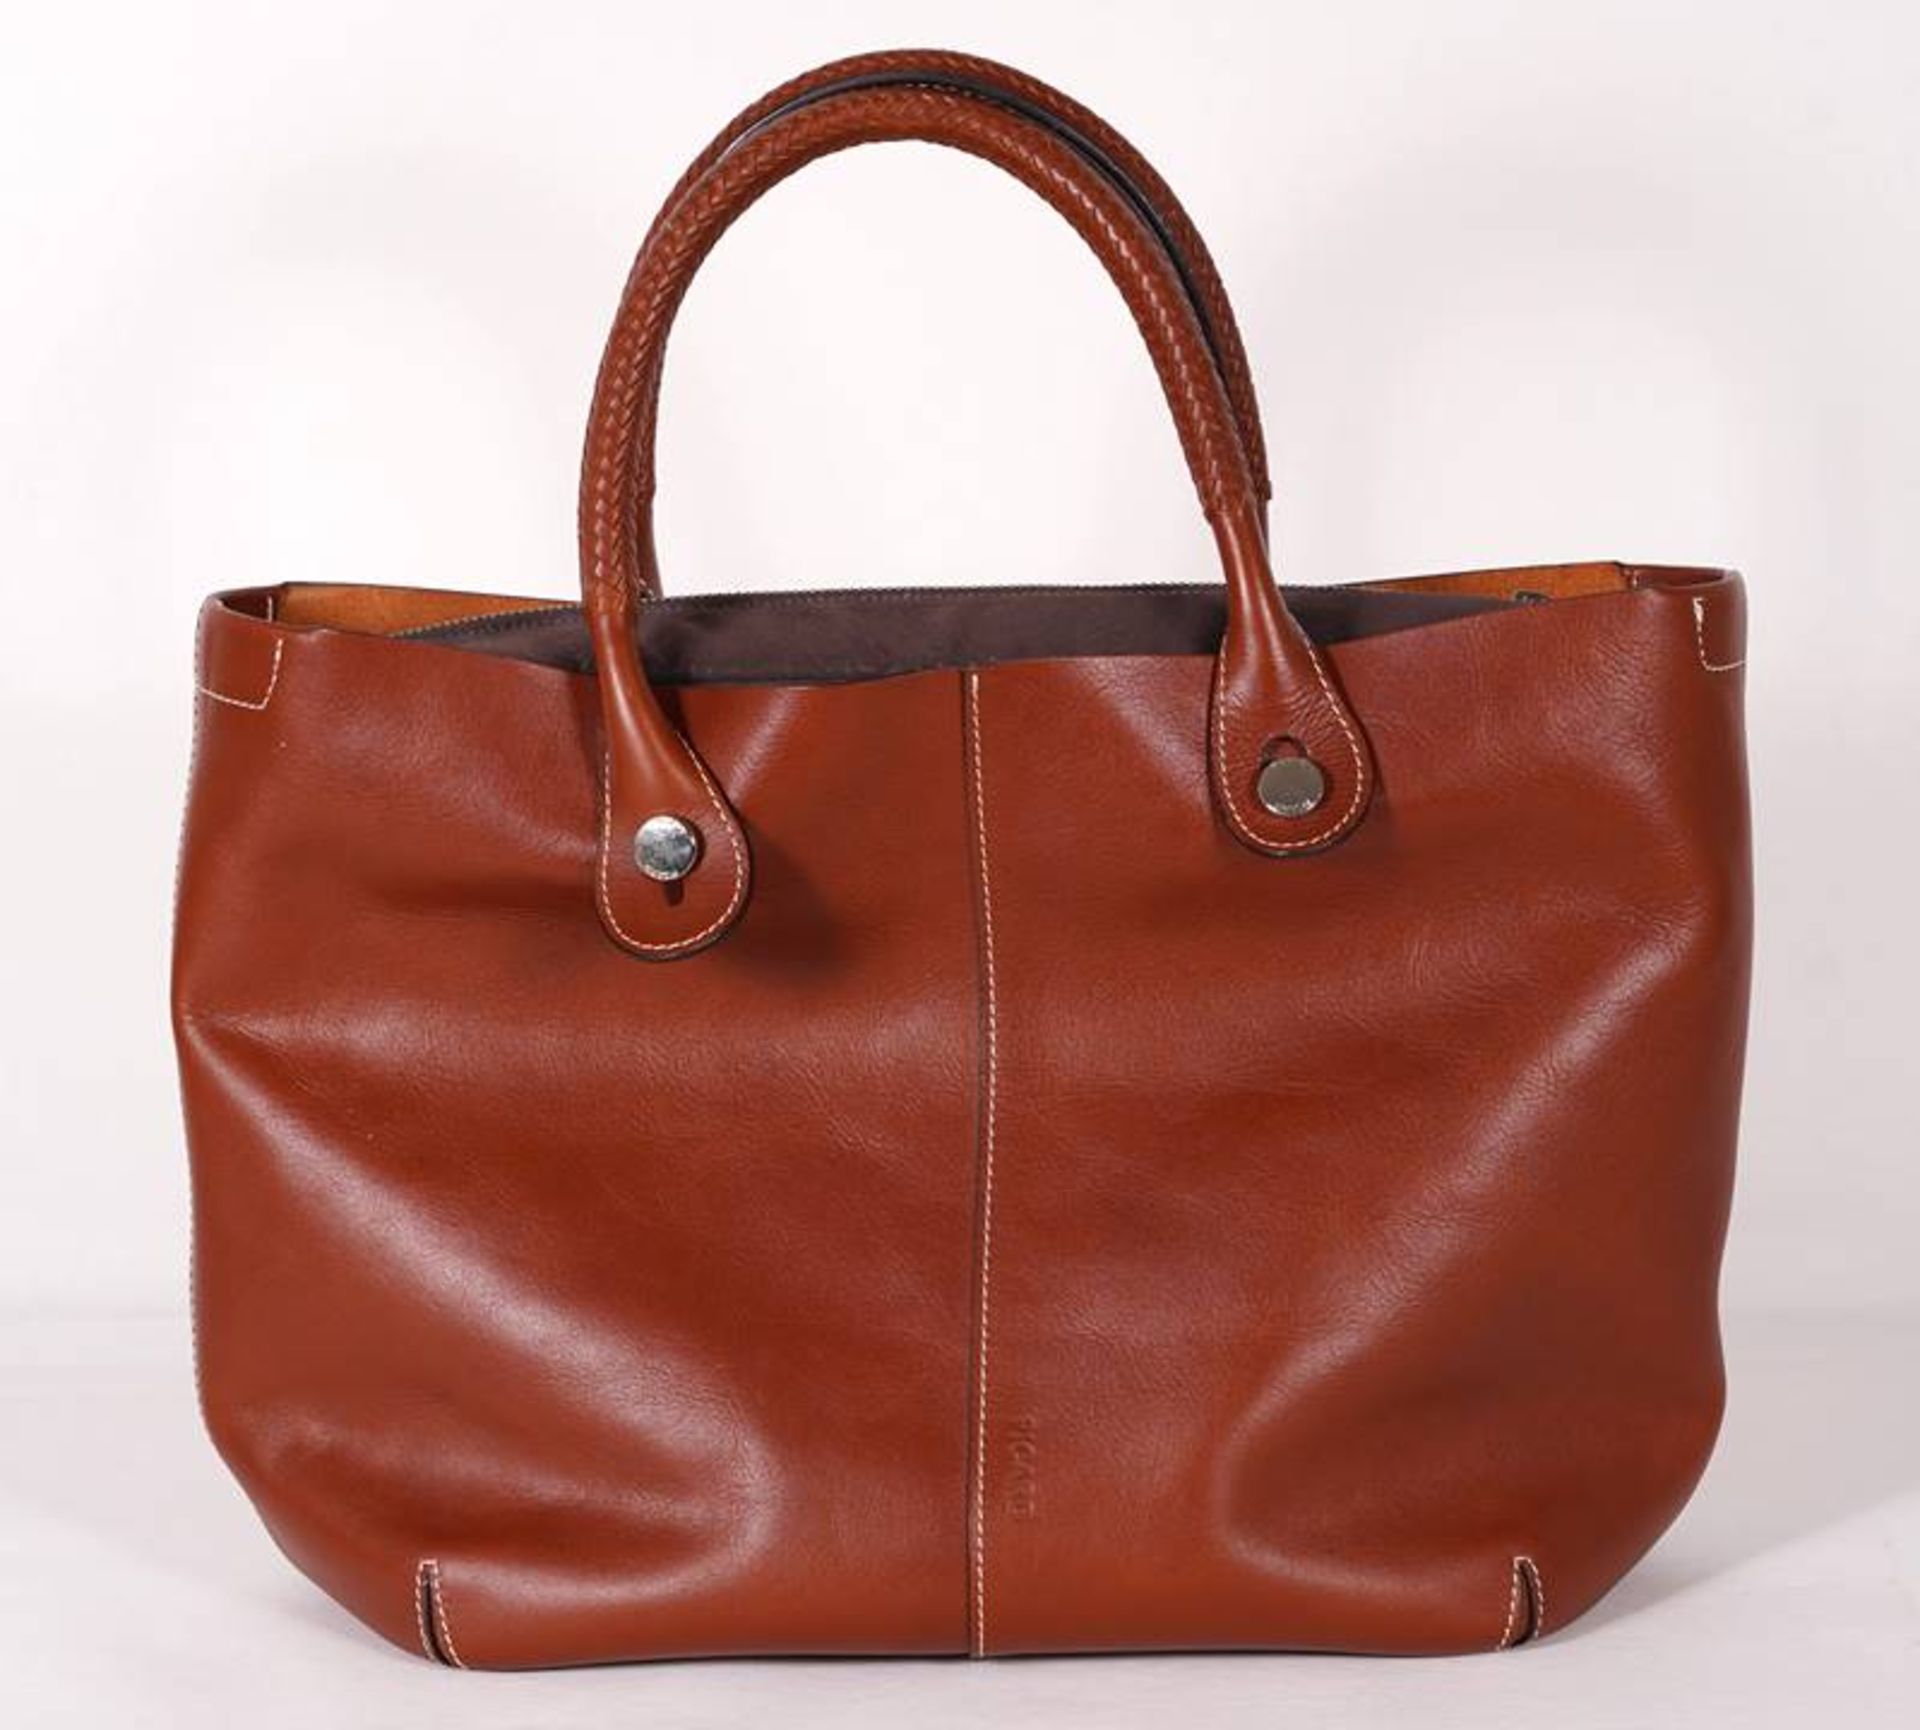 Picard Handbag - Image 3 of 8